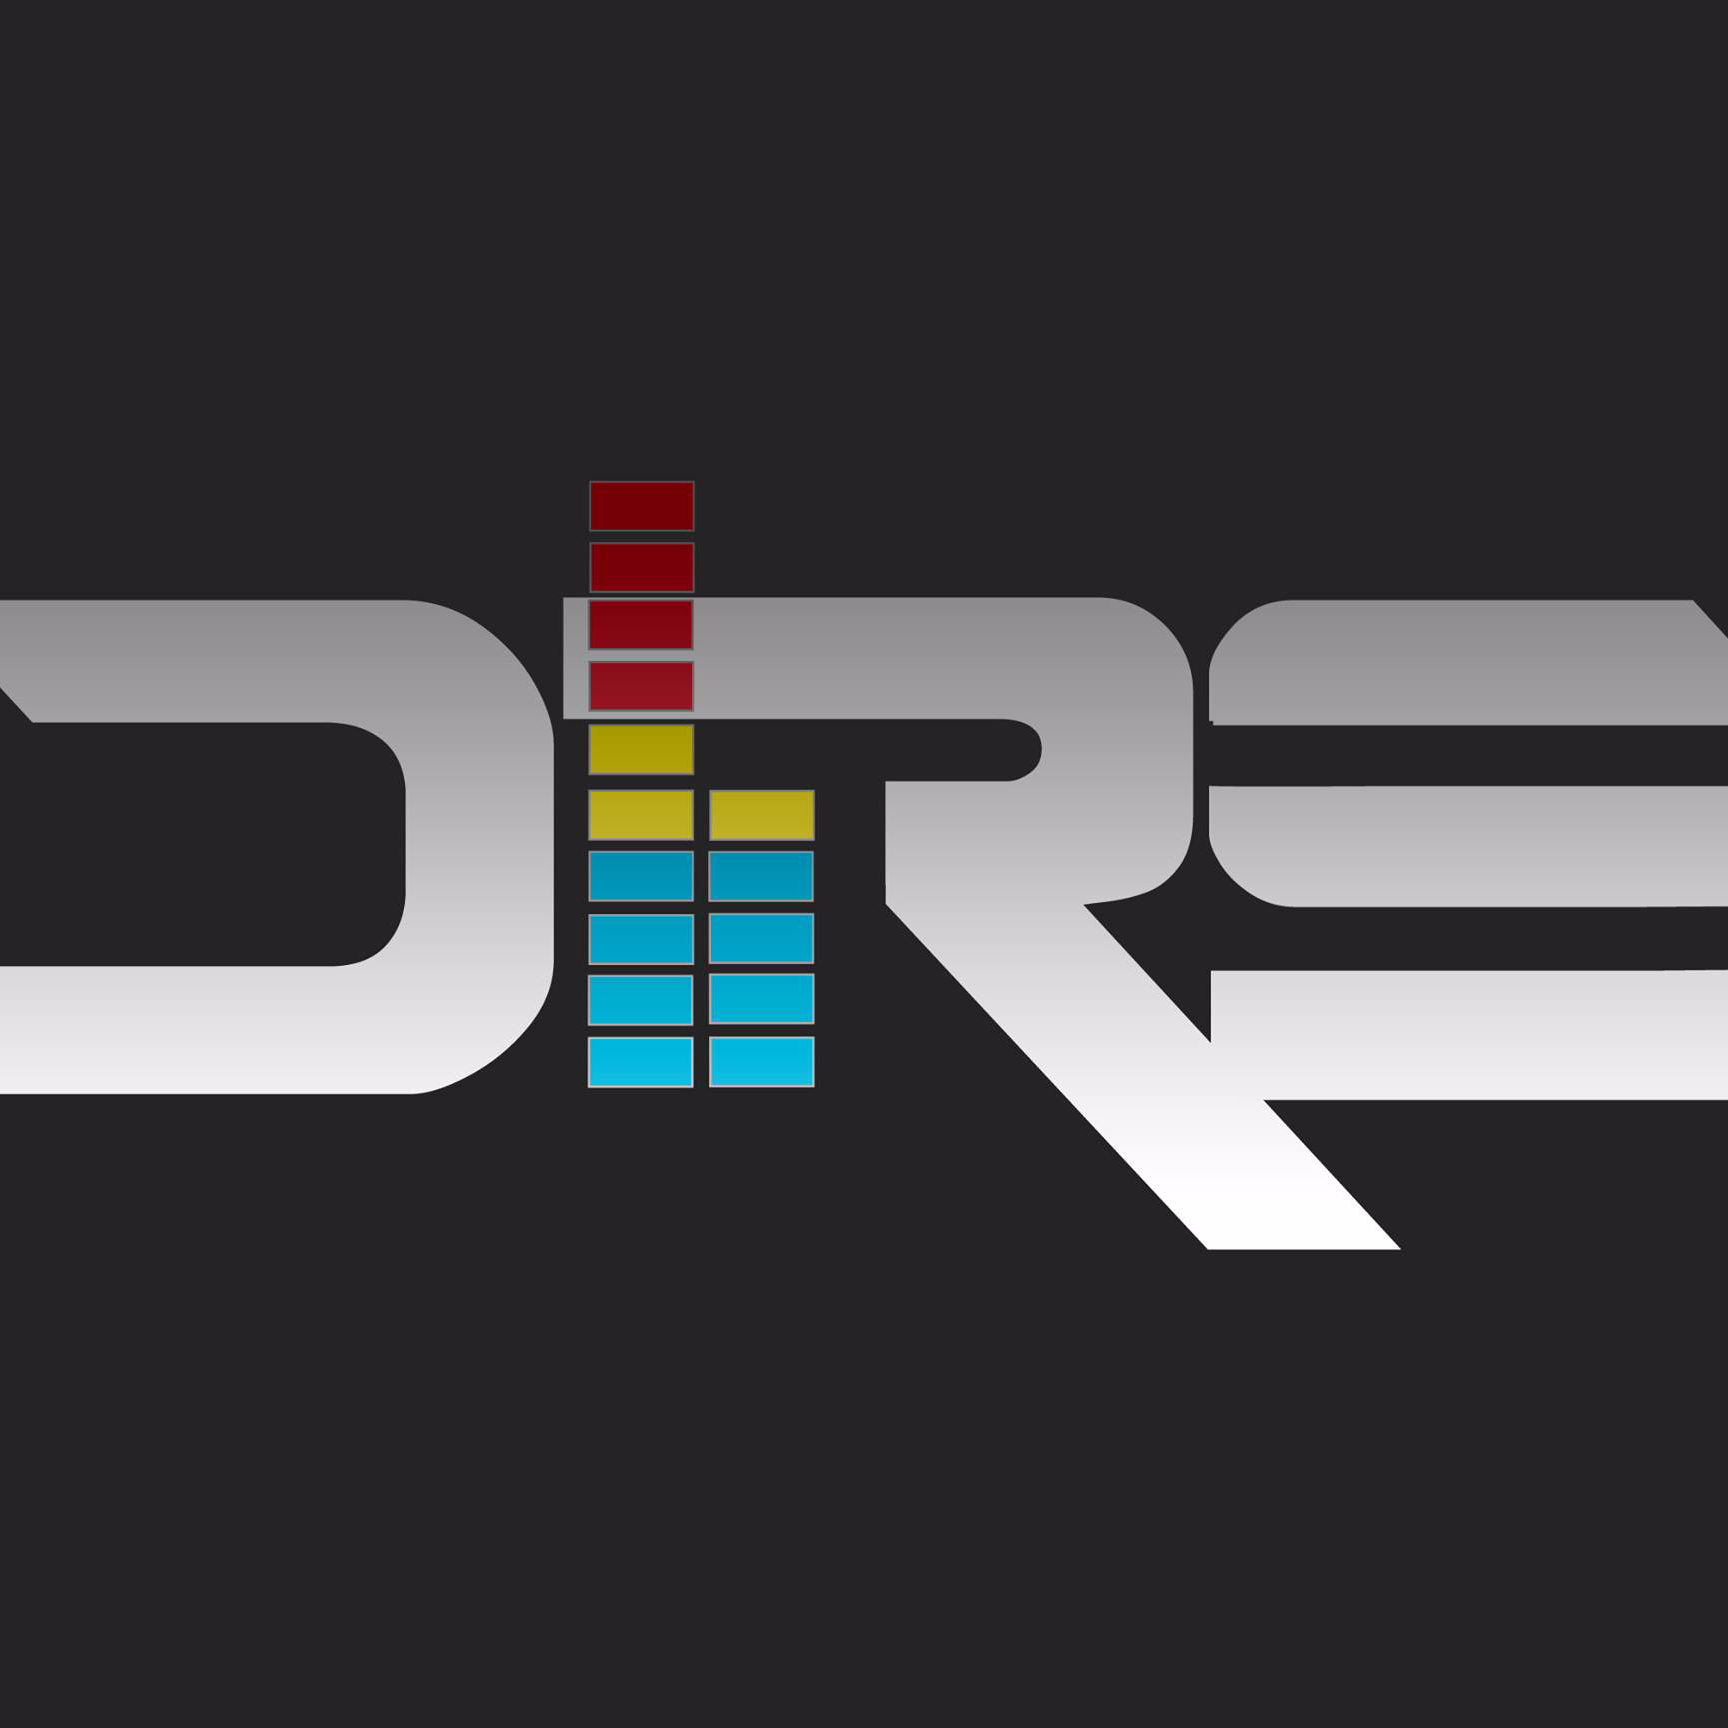 DRS - Drugacija Radio Stanica